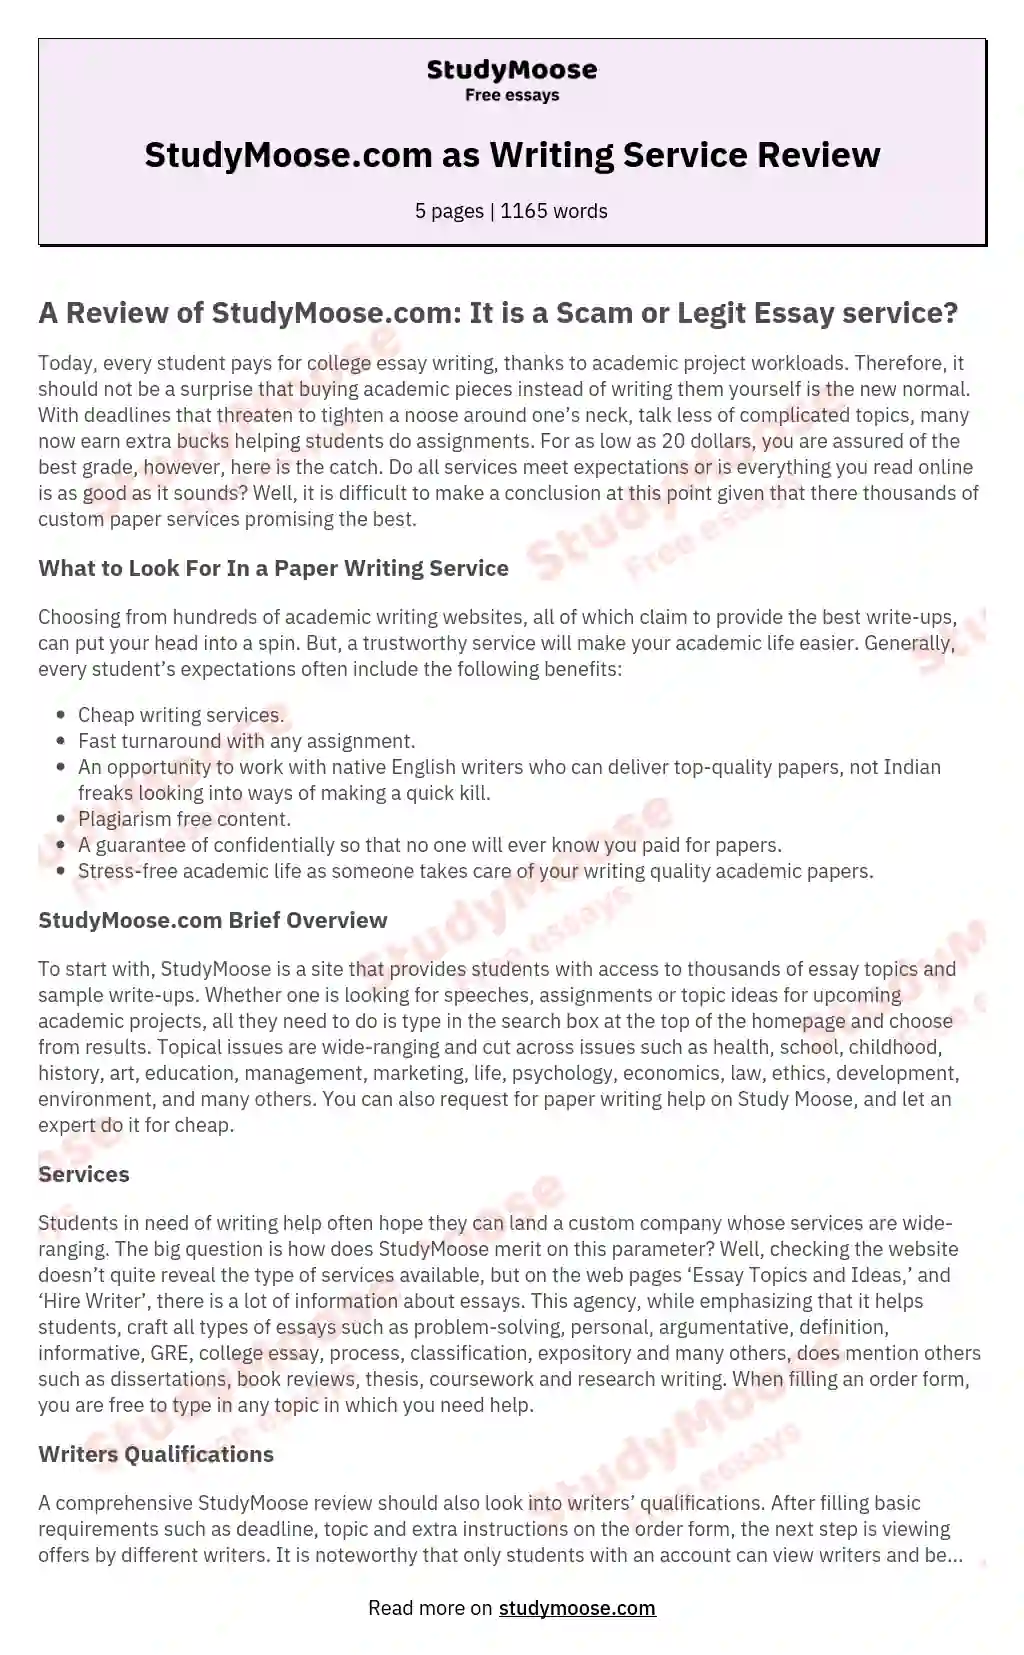 StudyMoose.com as Writing Service Review essay